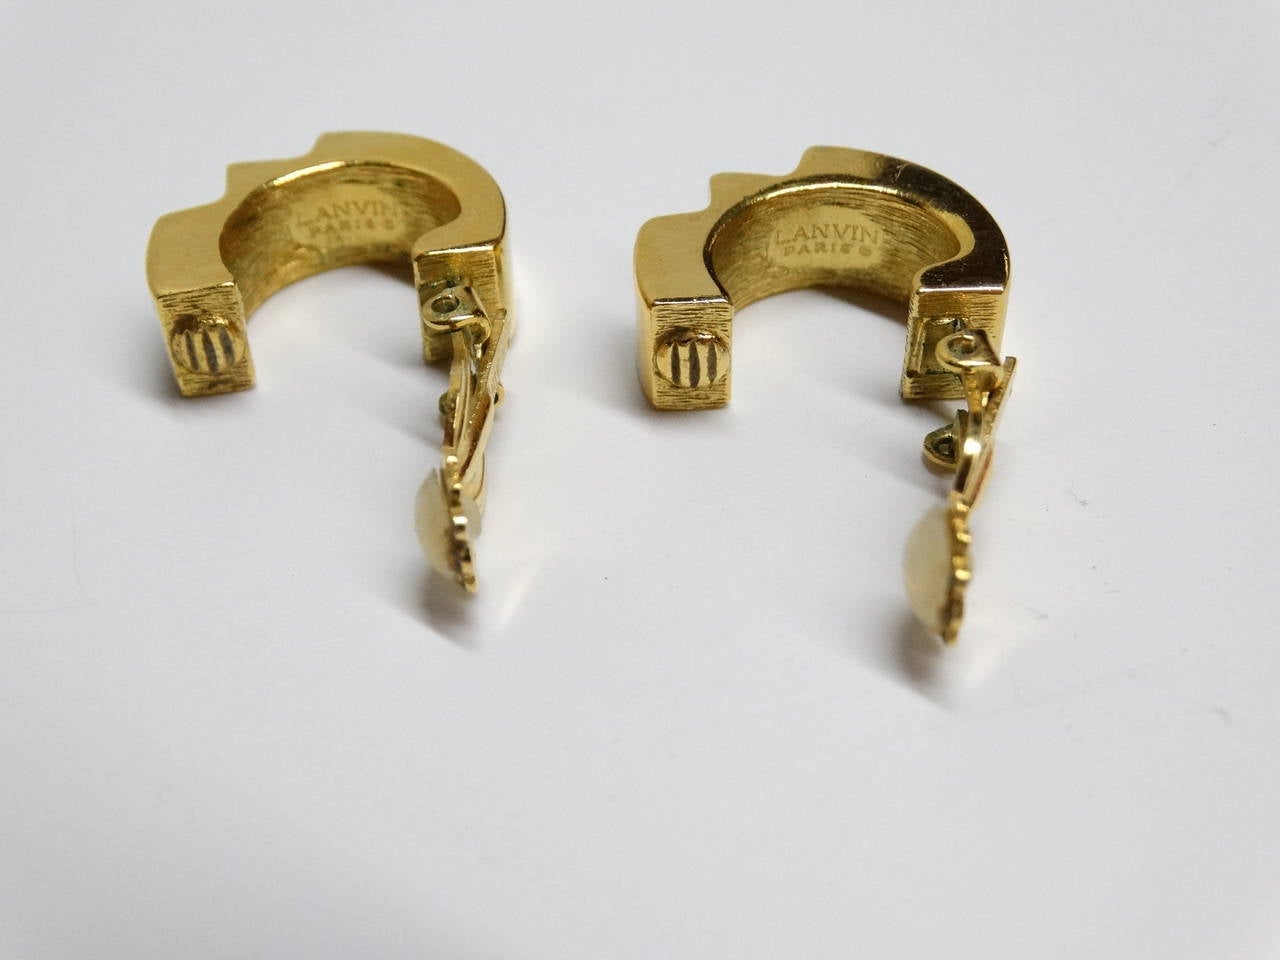 Modern 1970s Lanvin Two-Tone Bolt Earrings